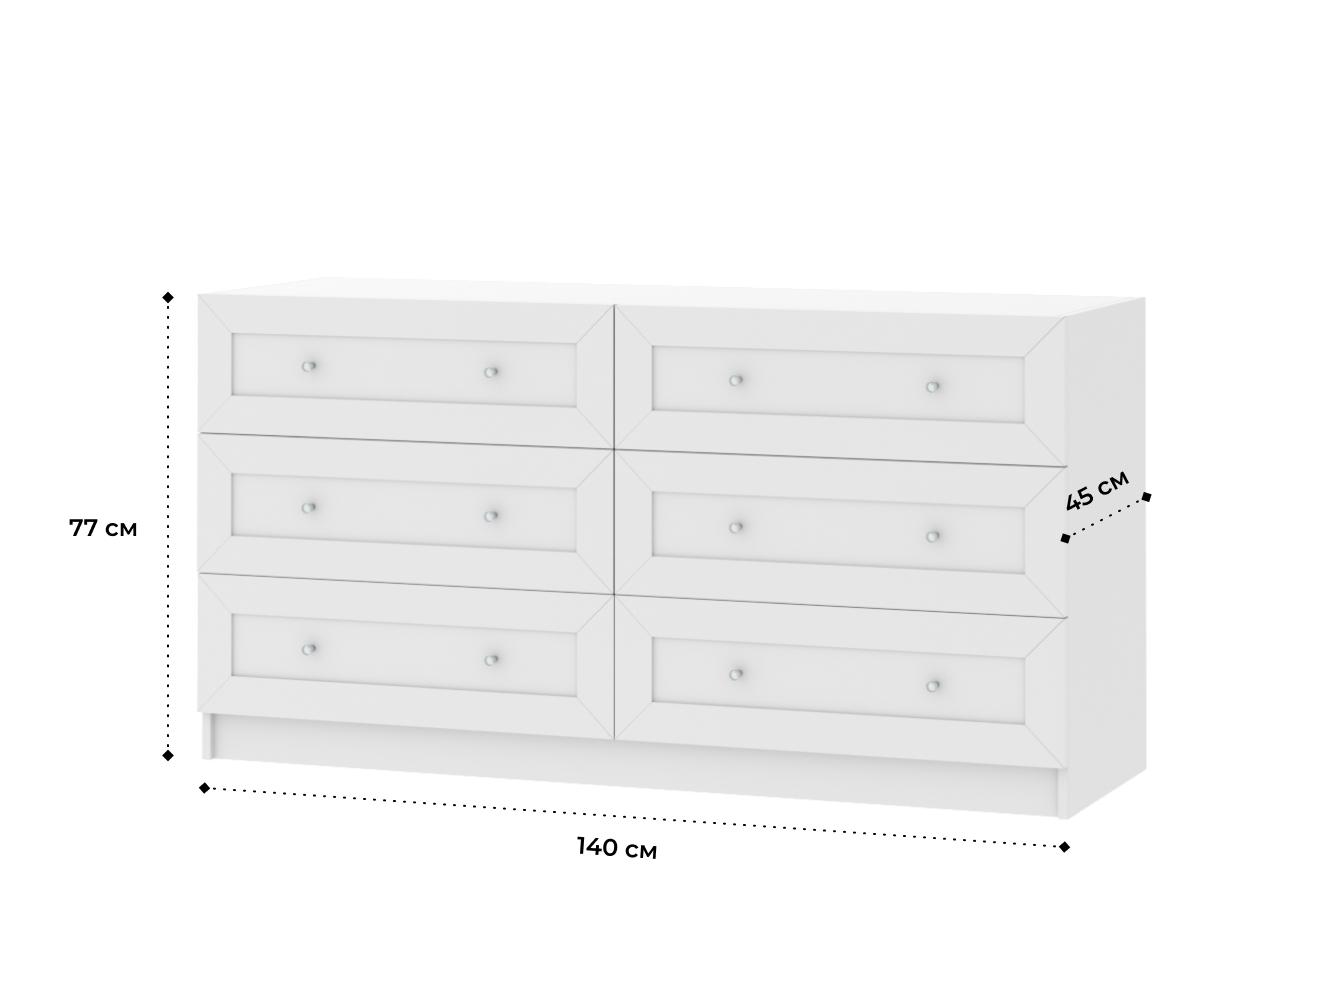 Комод Билли 219 white ИКЕА (IKEA) изображение товара